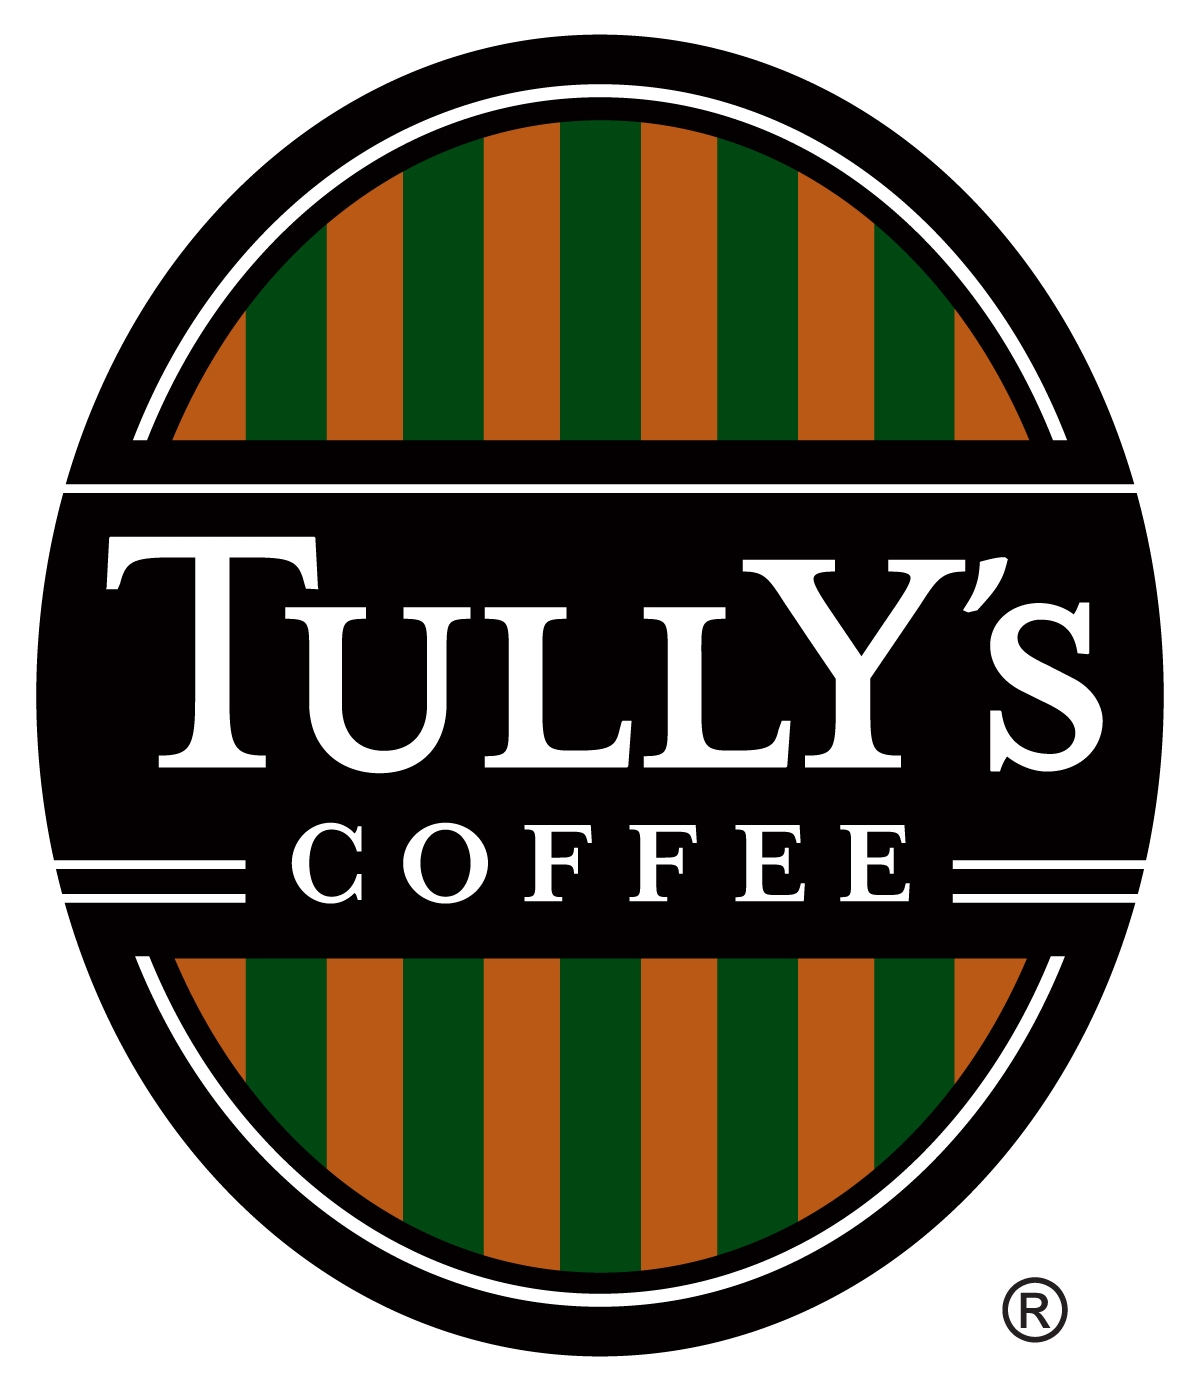 Tully S Coffee タリーズコーヒー ロゴマーク Logomark Mania 世界のかわいいロゴマーク集 企業ロゴ ブランドロゴ